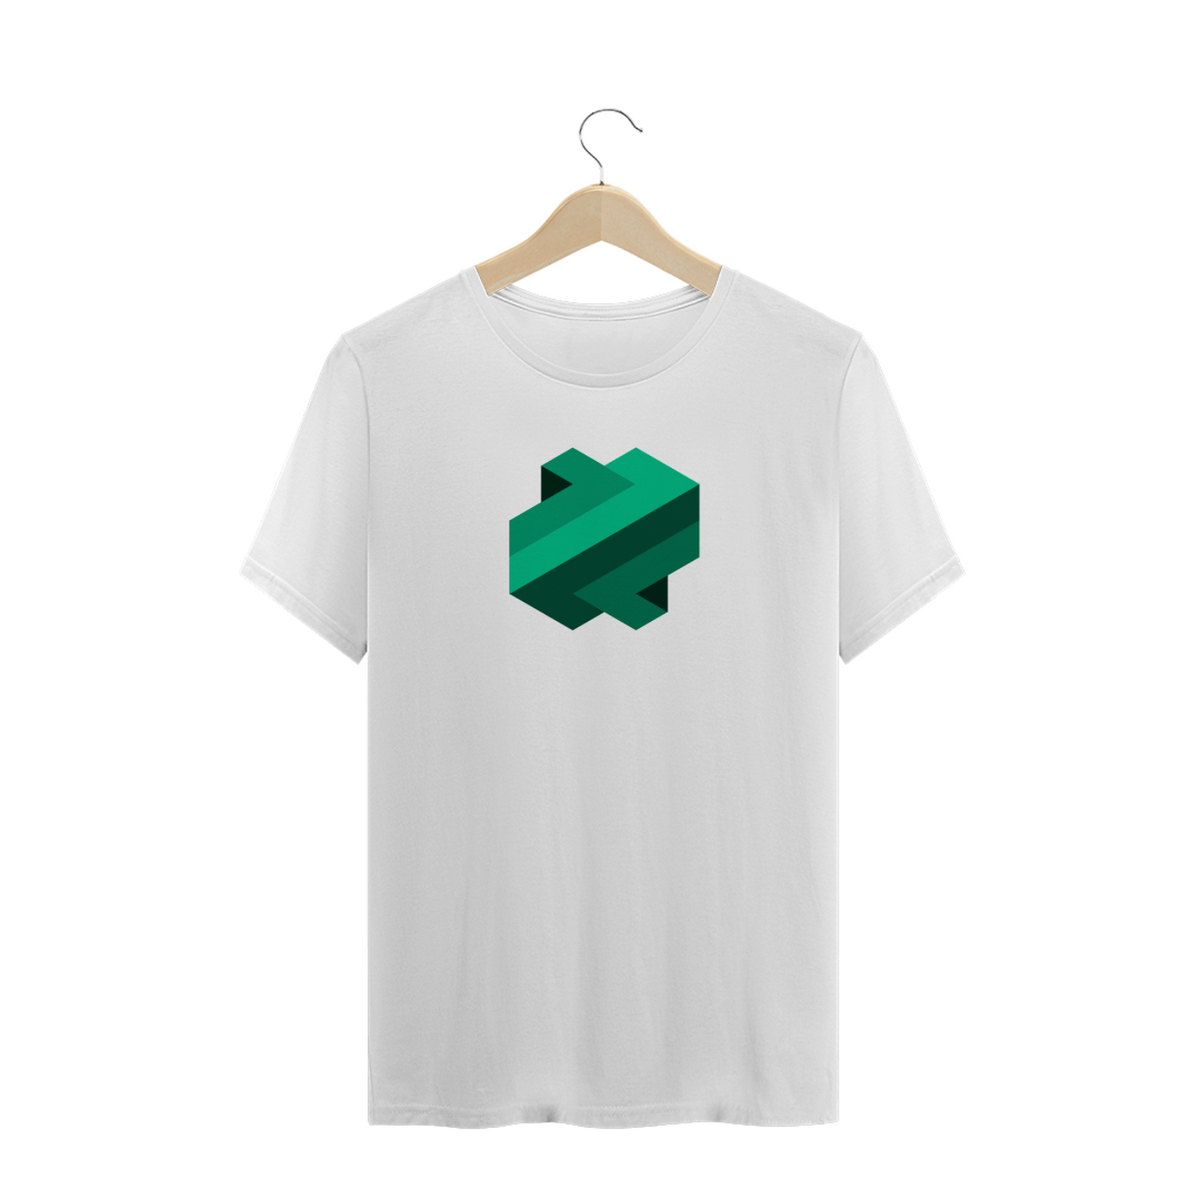 Nome do produto: Criptos - Camisa Emerald